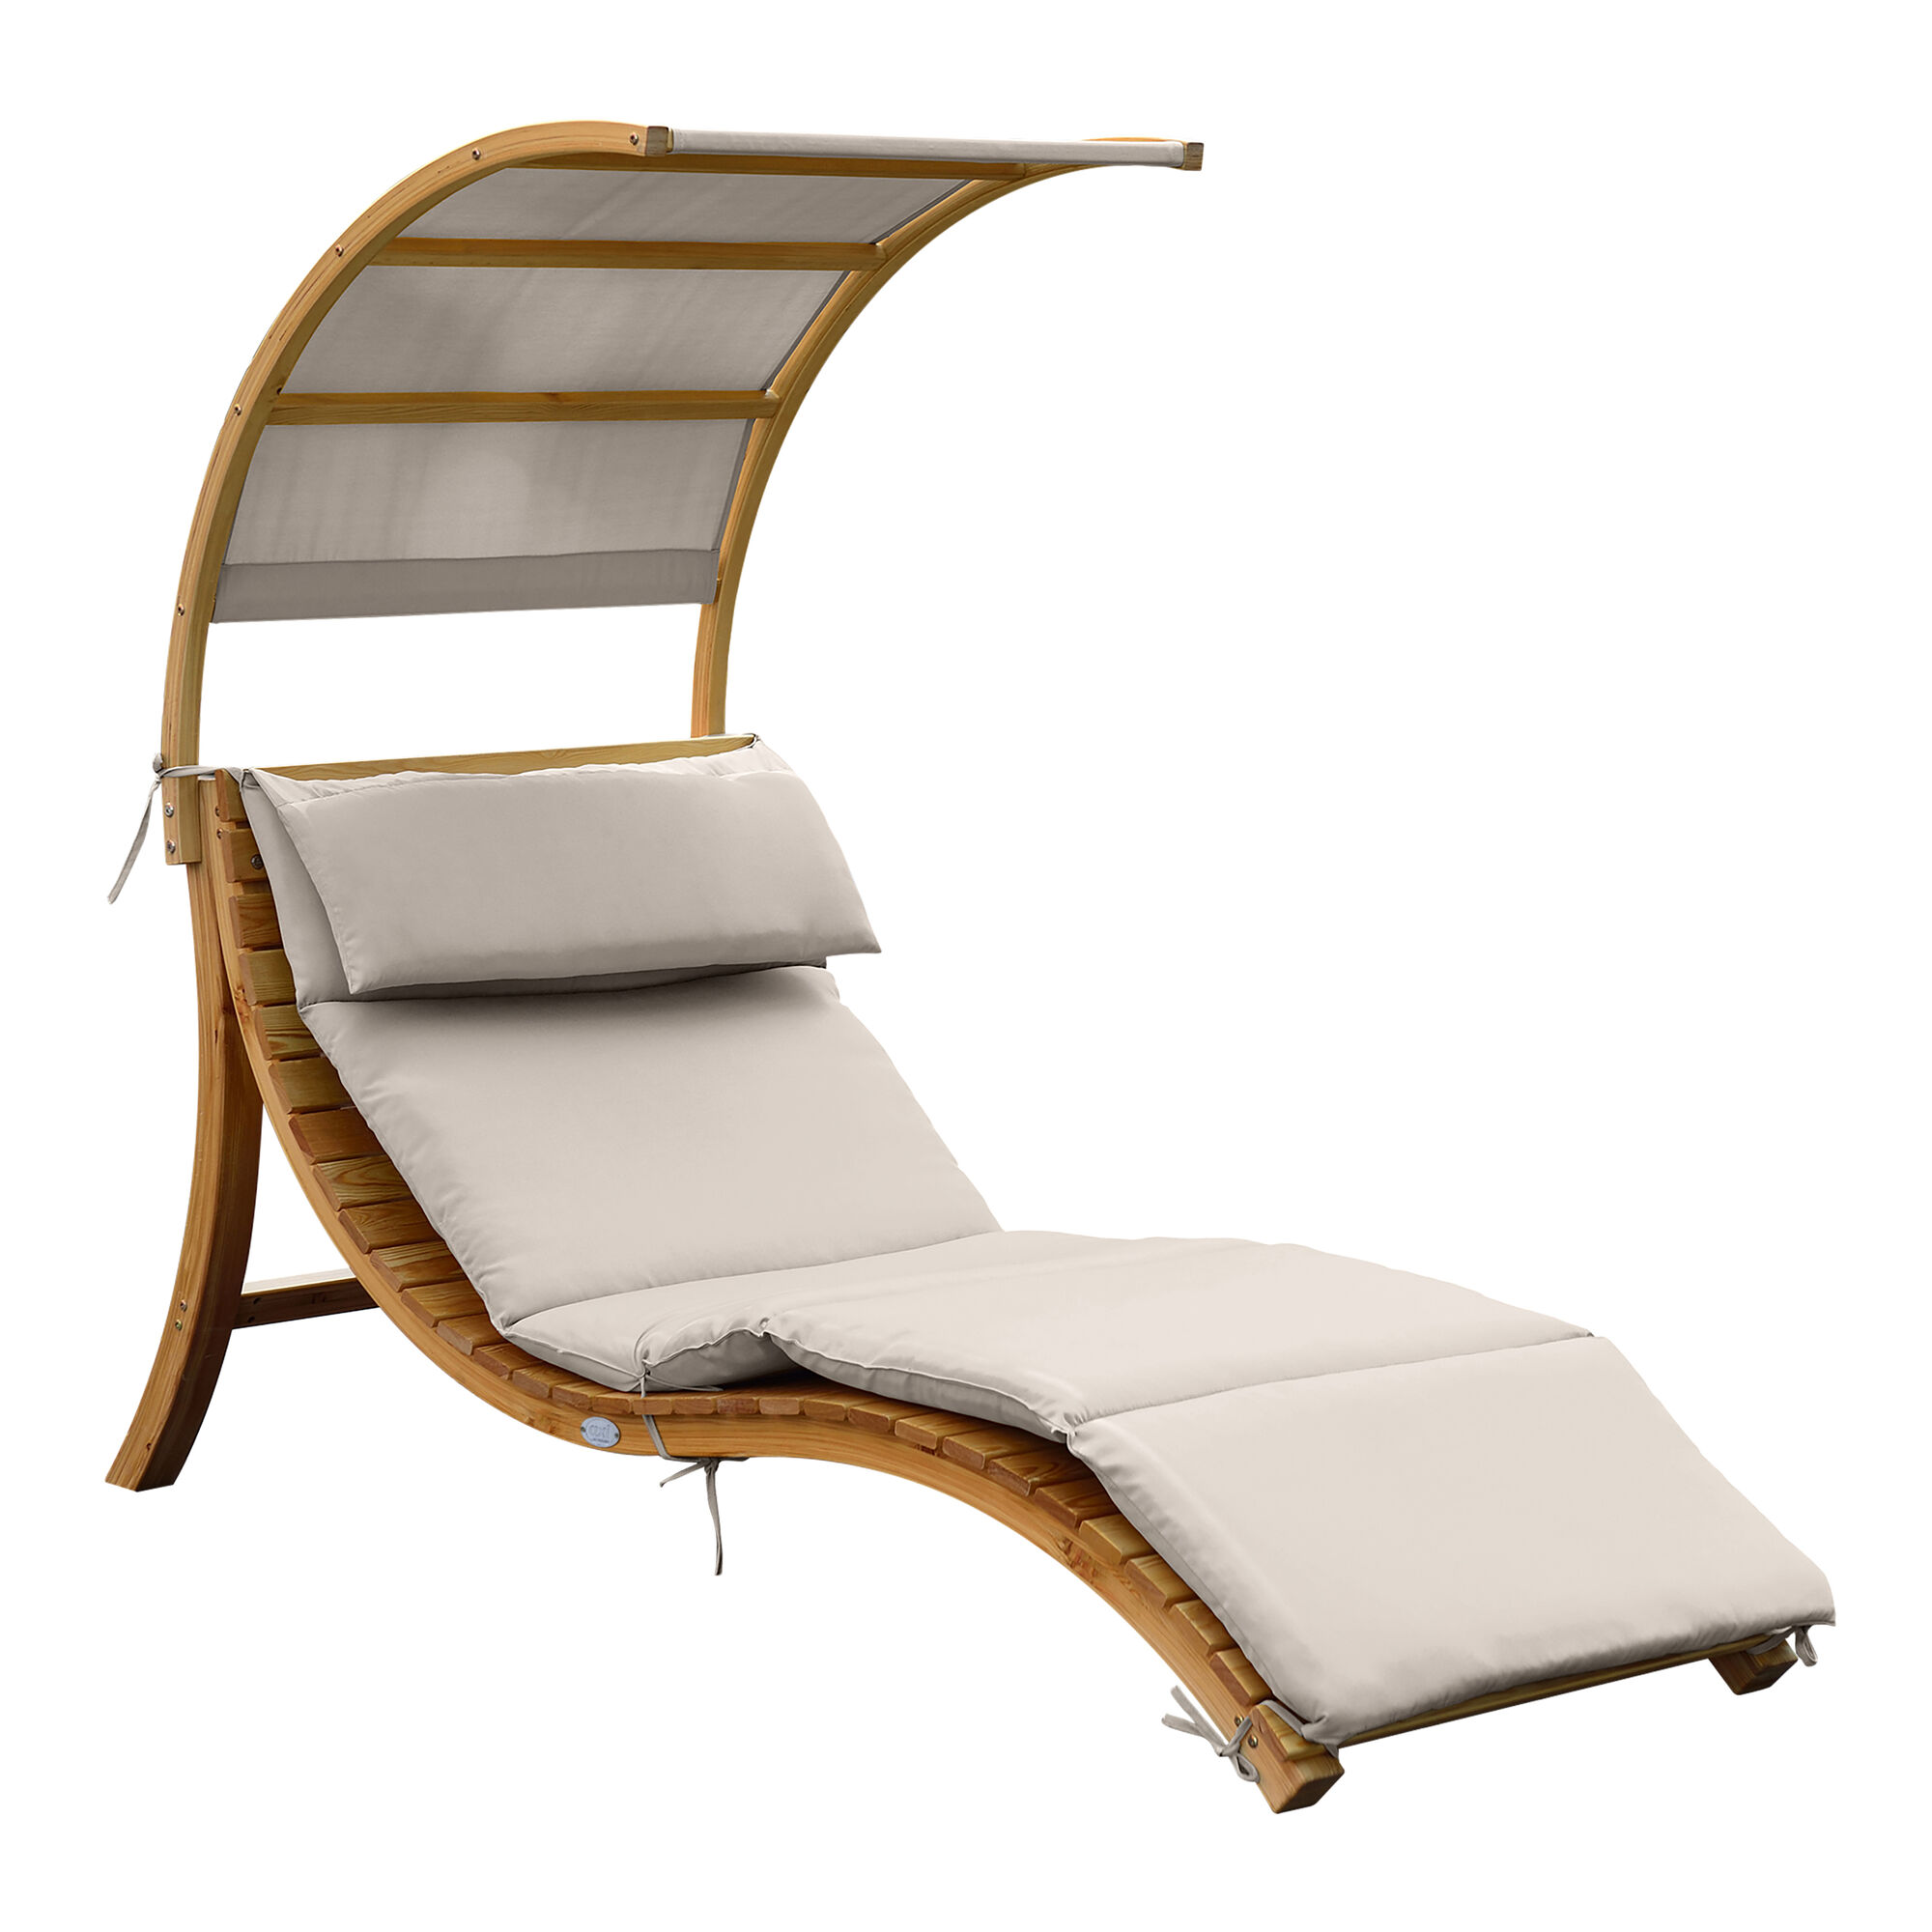 productfoto AXI Salina ligstoel met zonnescherm Beige